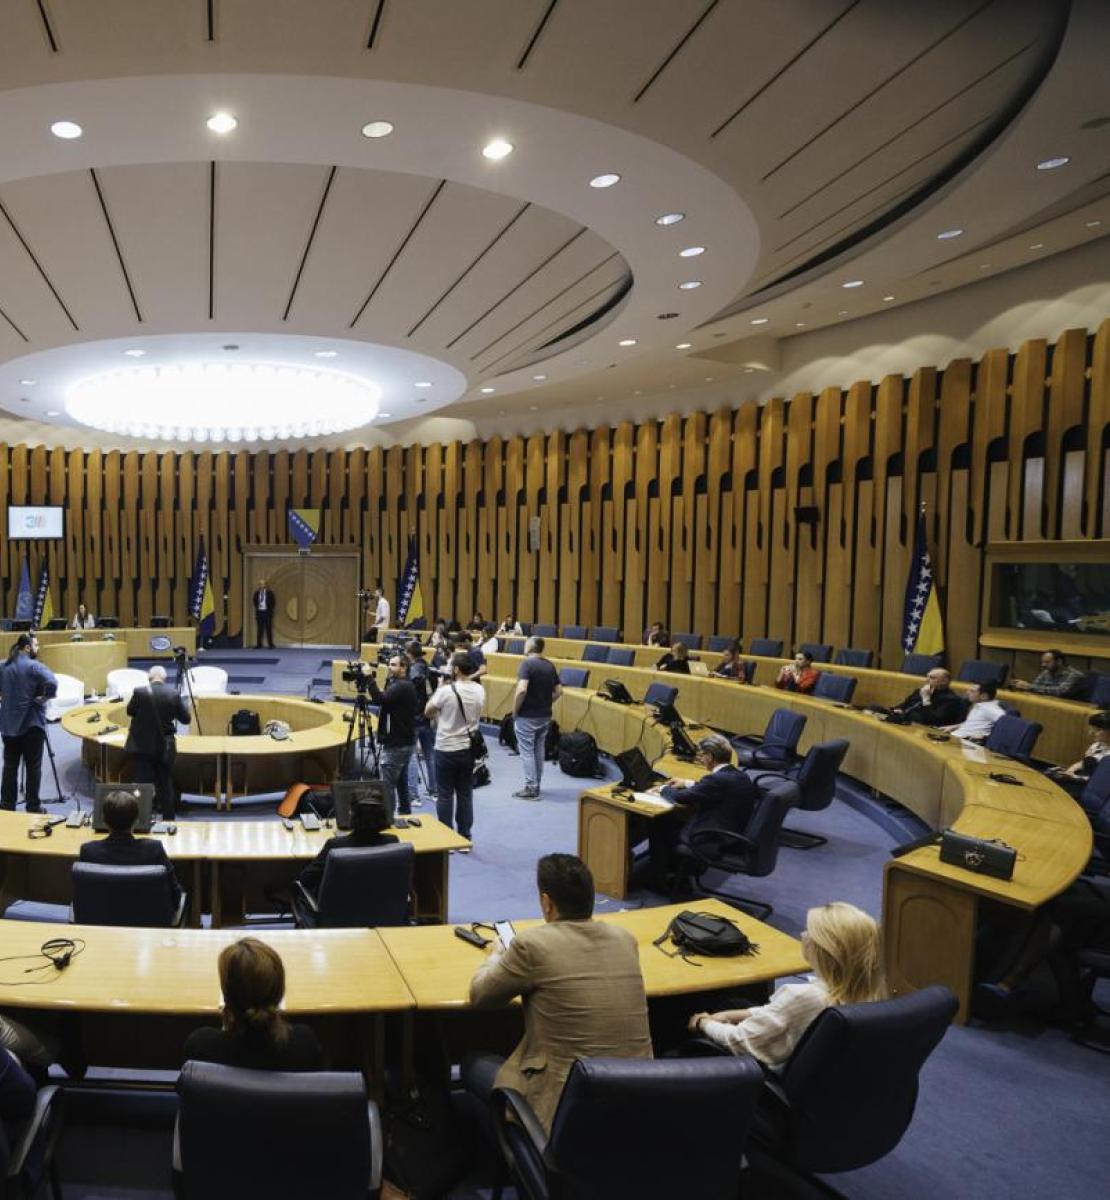 Se celebra una ceremonia en la Asamblea Parlamentaria de Sarajevo para conmemorar el trigésimo aniversario de la adhesión de Bosnia y Herzegovina a las Naciones Unidas.